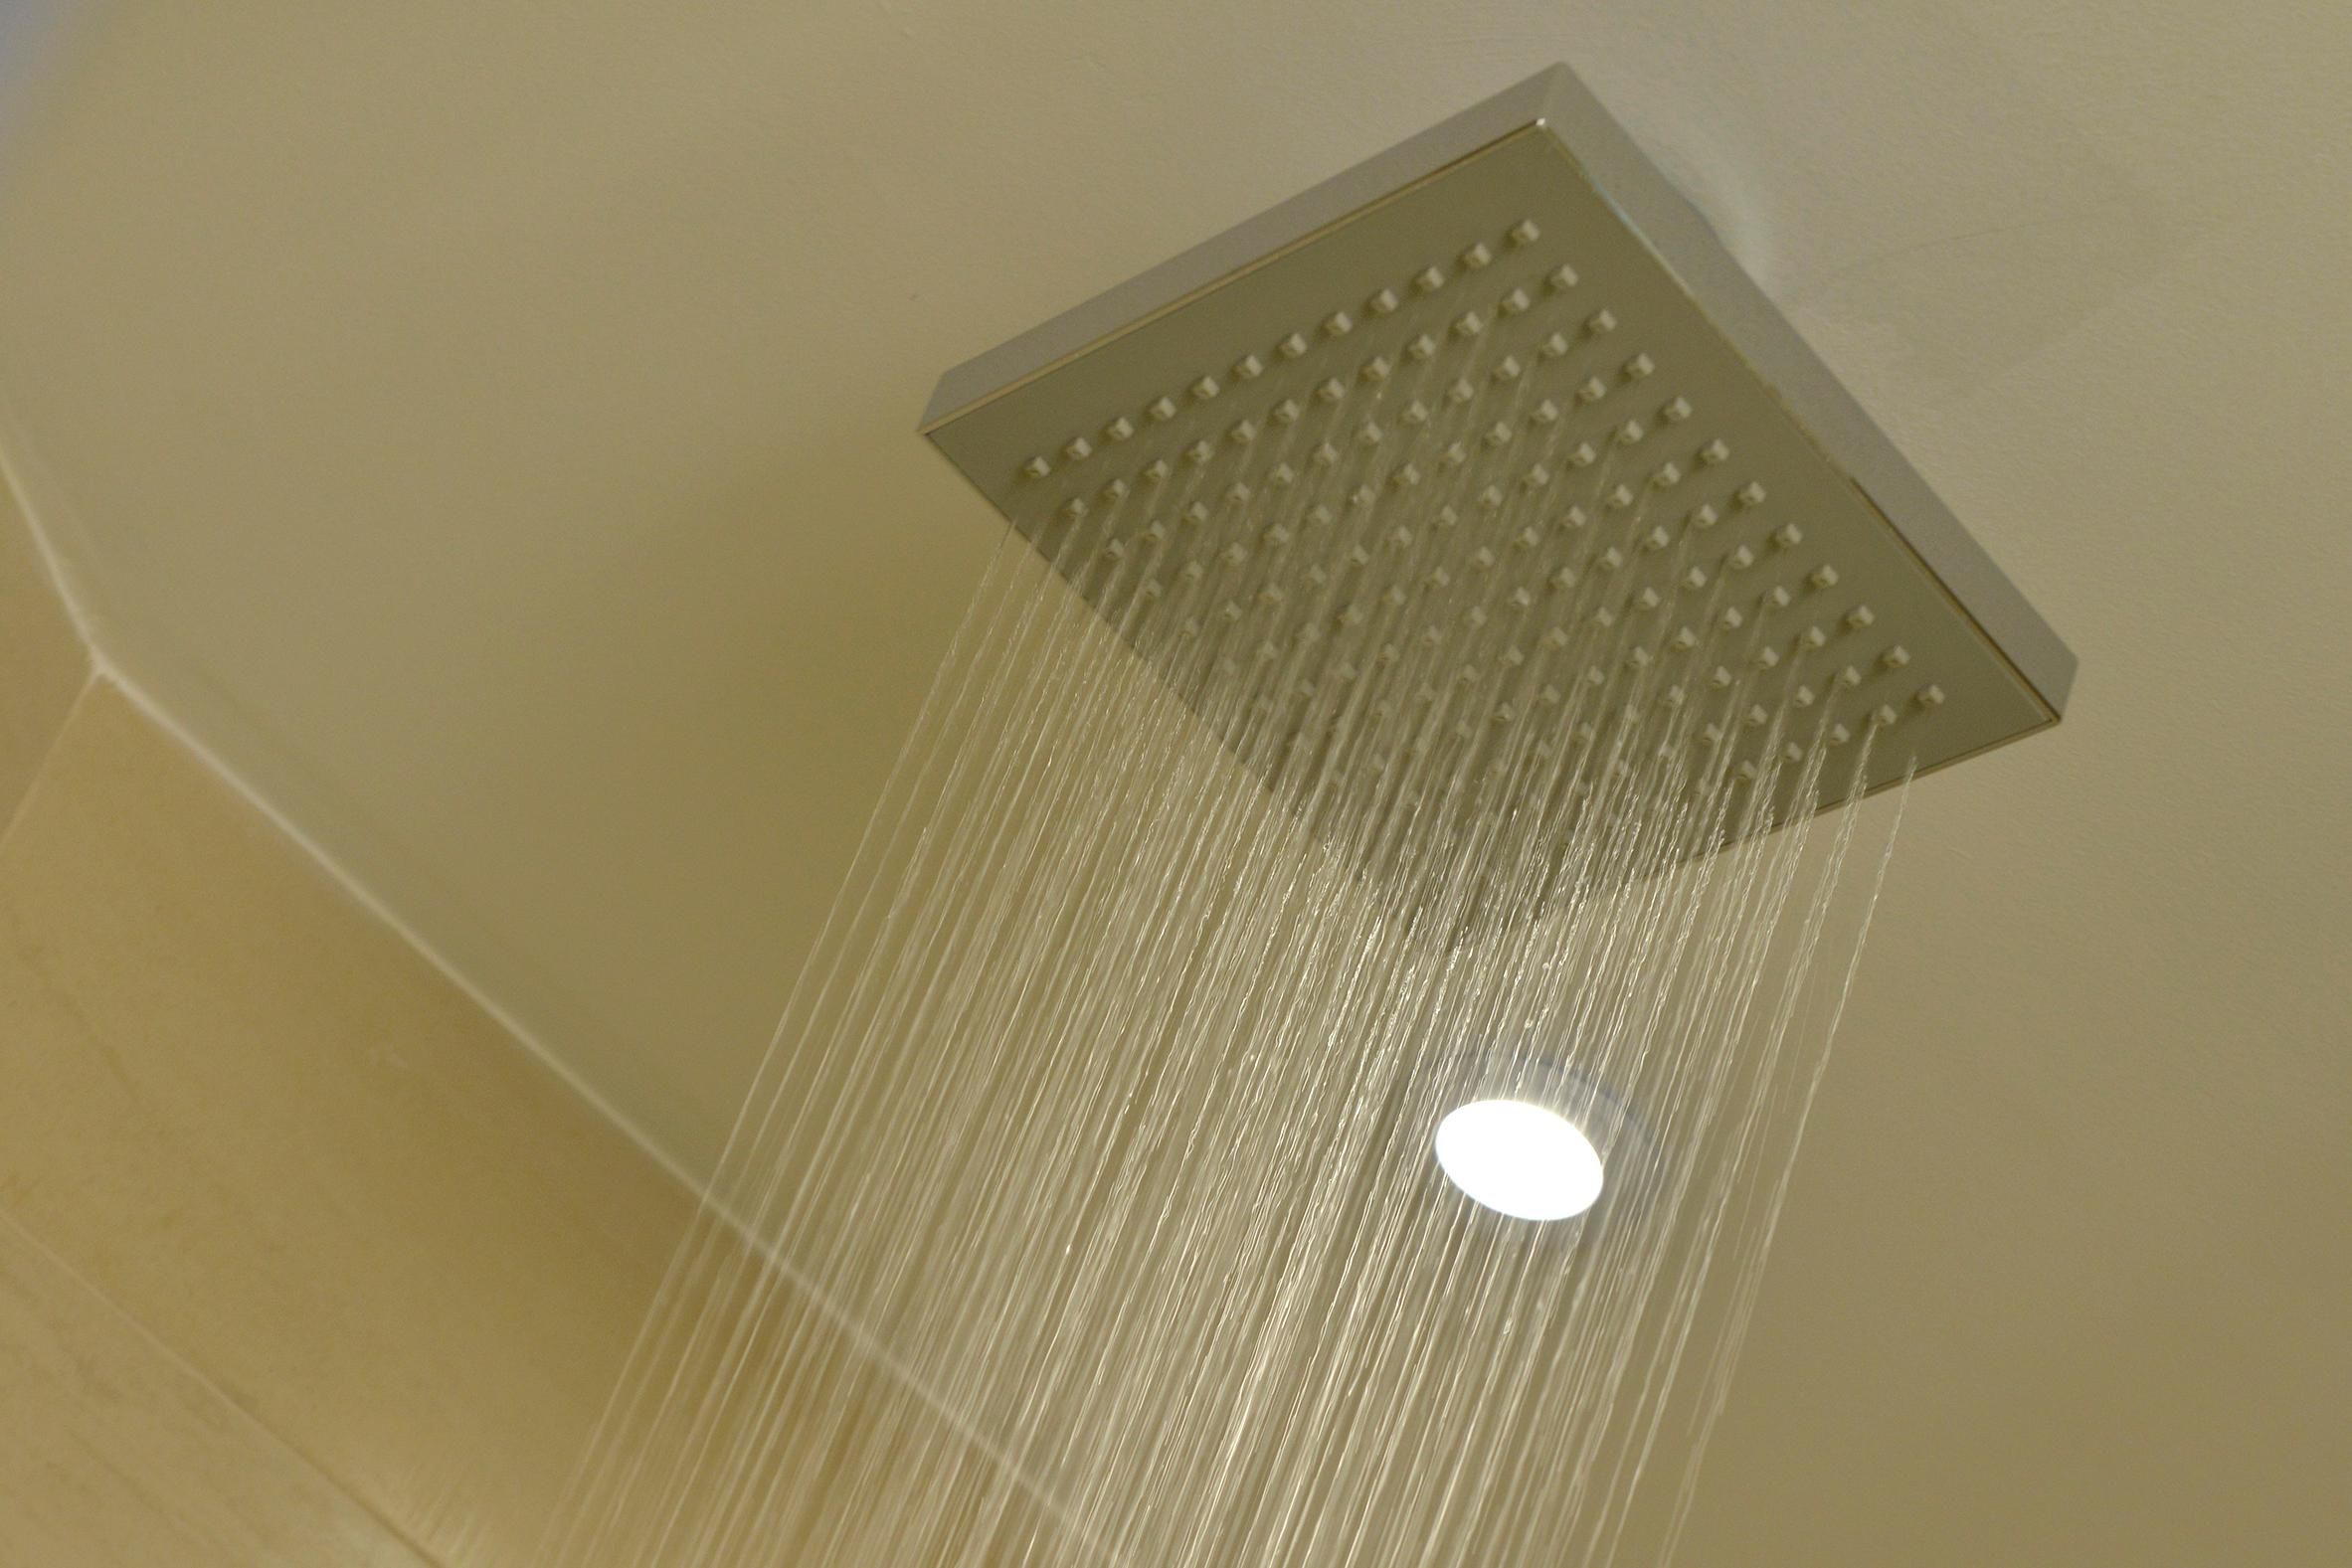 Rain shower - Bathroom